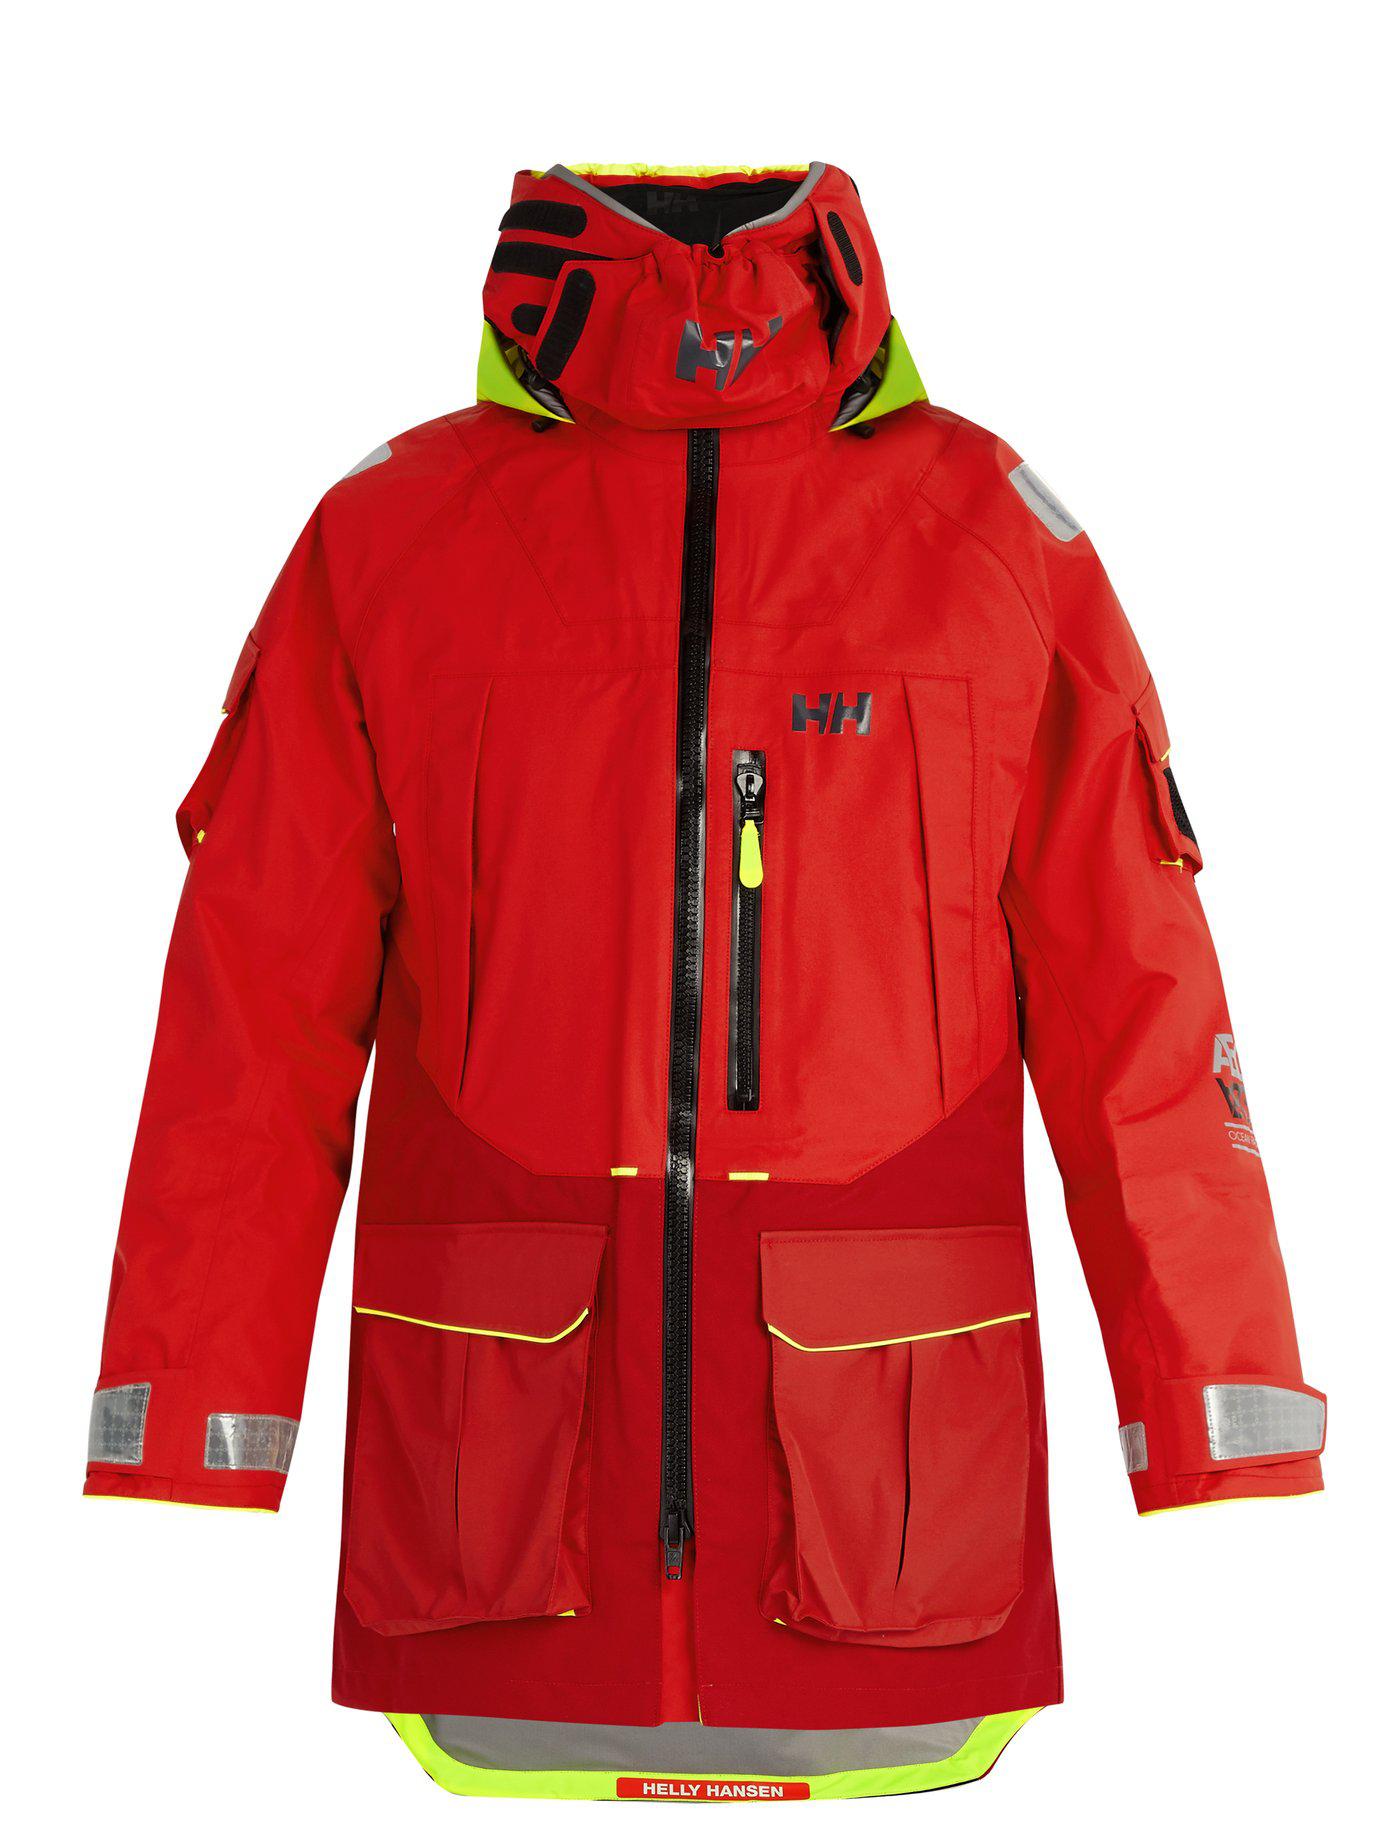 Helly Hansen Fleece Aegir Ocean Jacket in Red for Men - Lyst